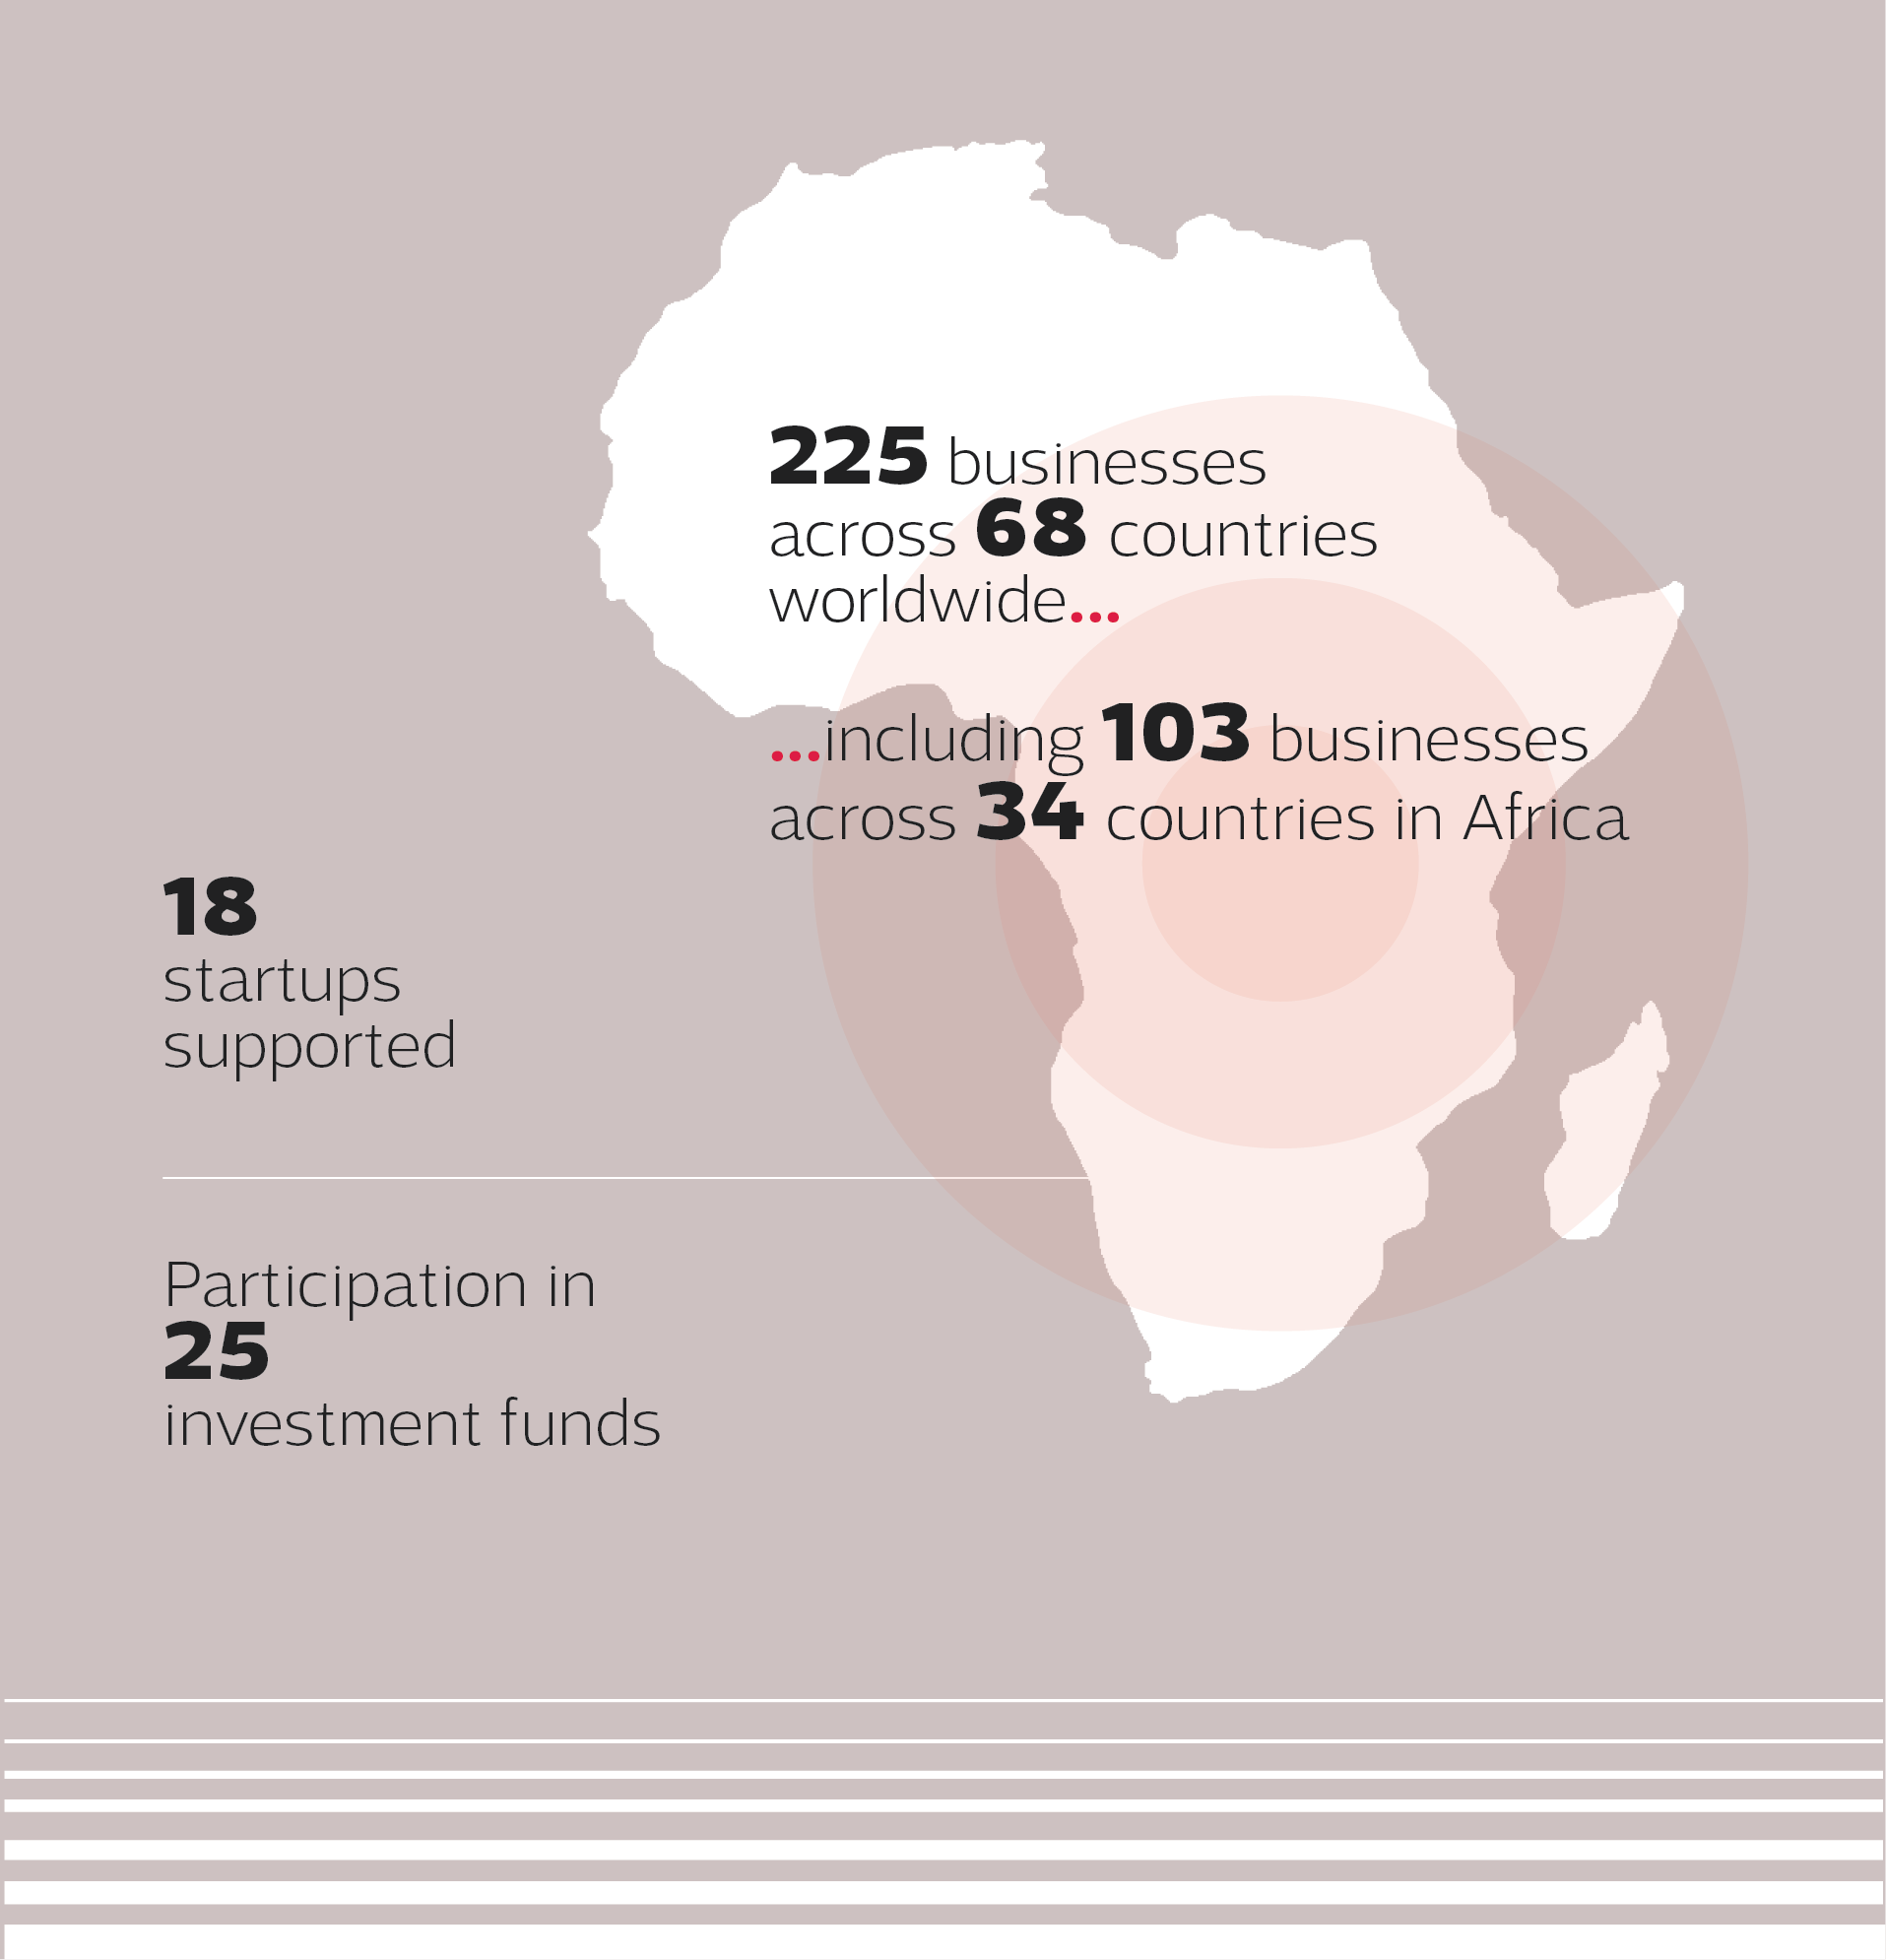 carte de l'afrique représentative des activités du groupe sur mobile